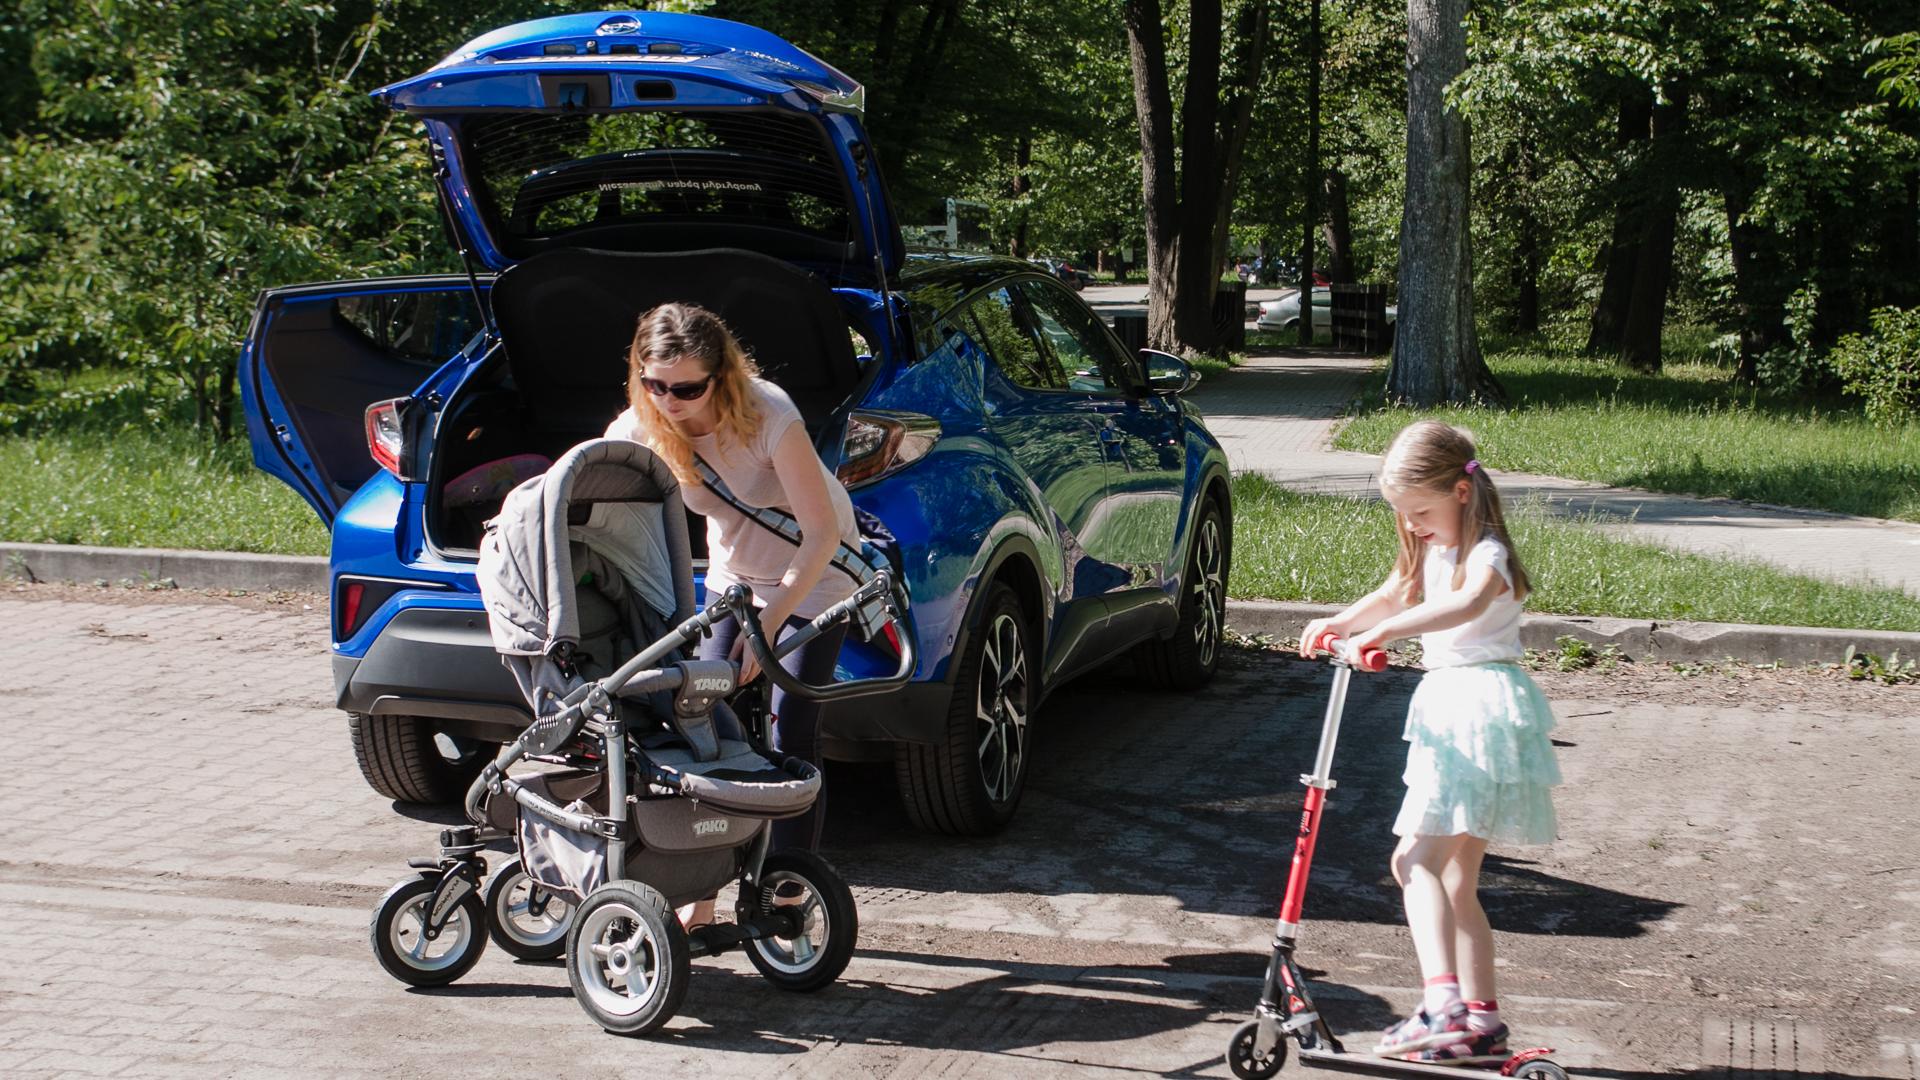 Toyota CHR czy to dobry wybór dla rodziny? • AutoCentrum.pl